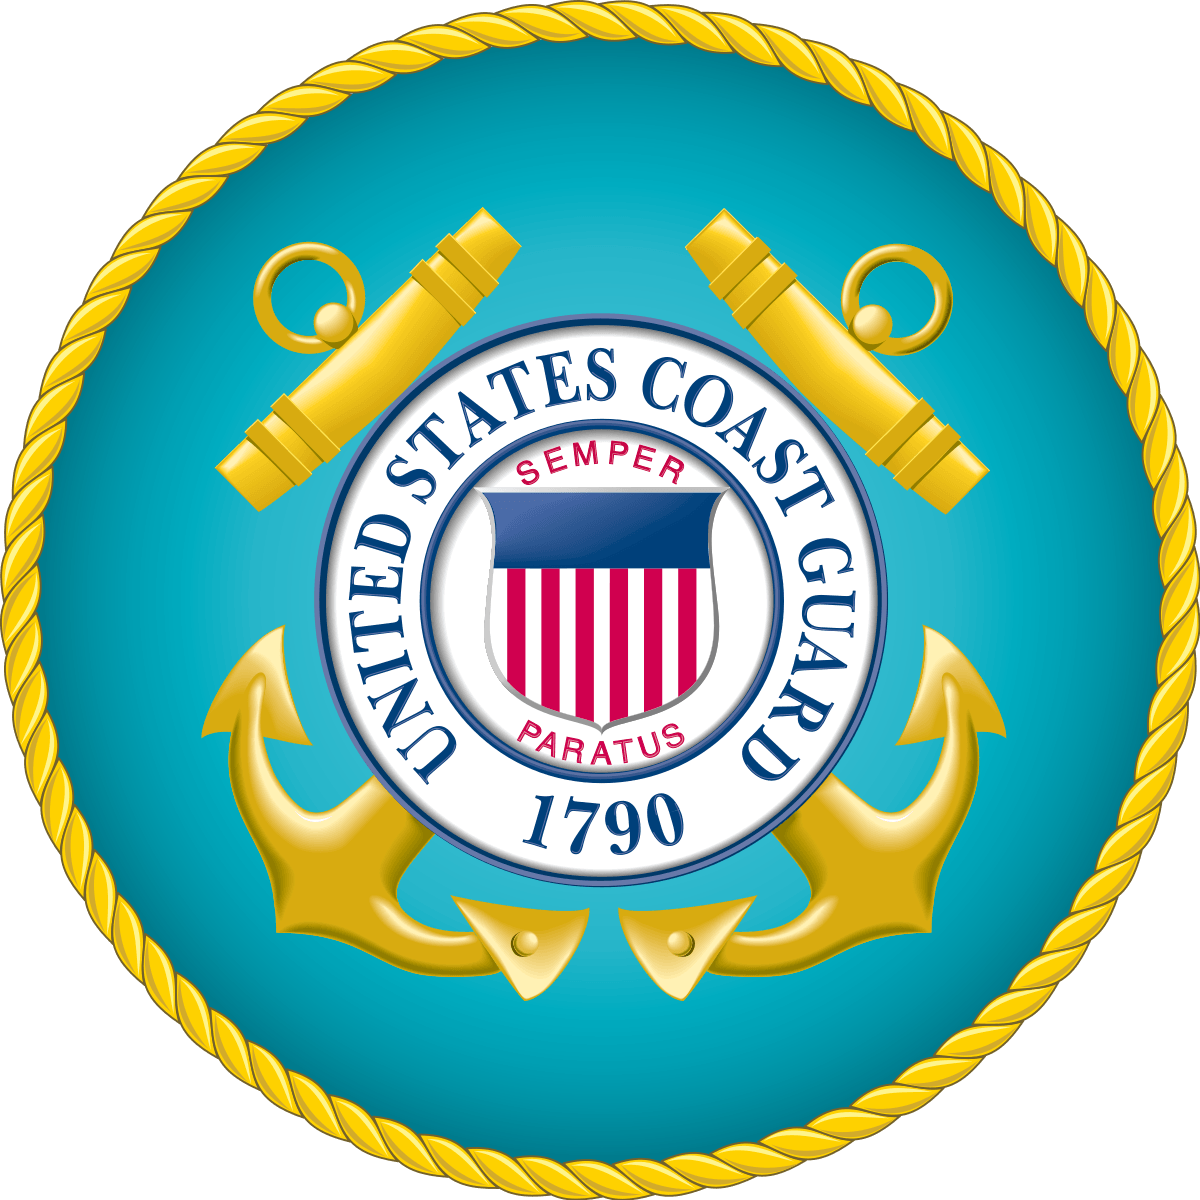 USCG Logo - United States Coast Guard